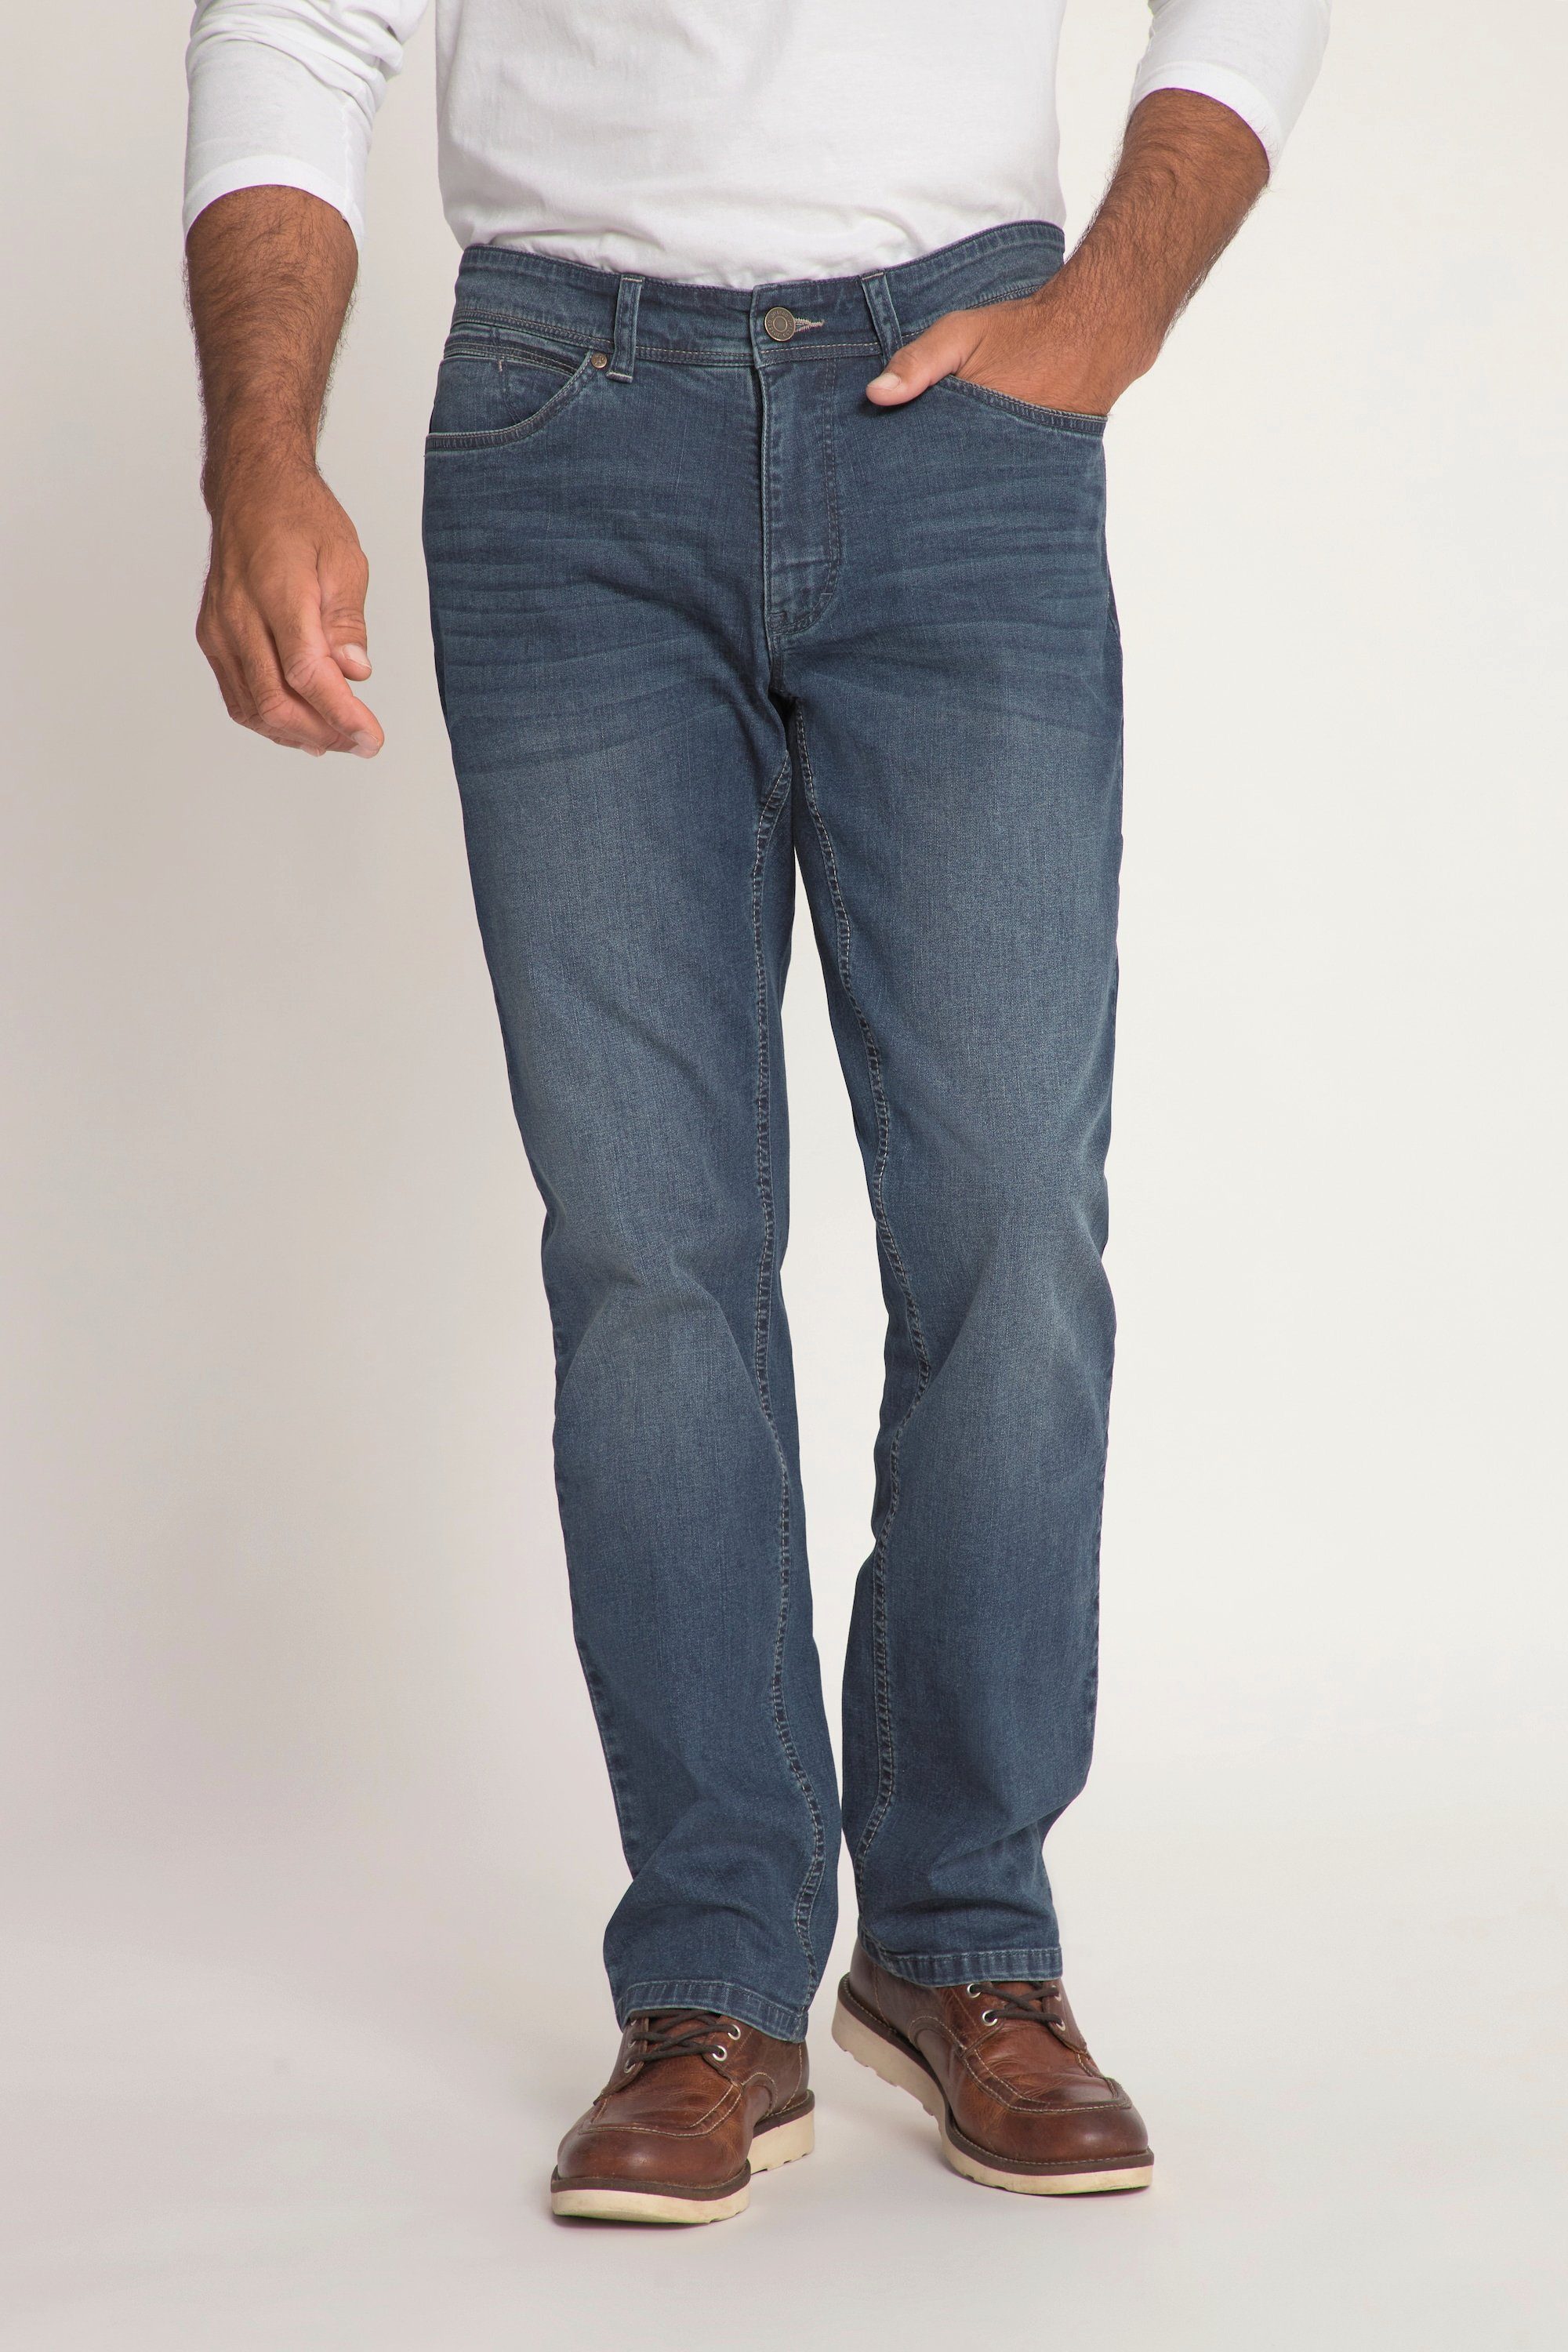 JP1880 Cargohose Jeans lightweight Bauchfit Regular Fit 5-Pocket dark blue denim